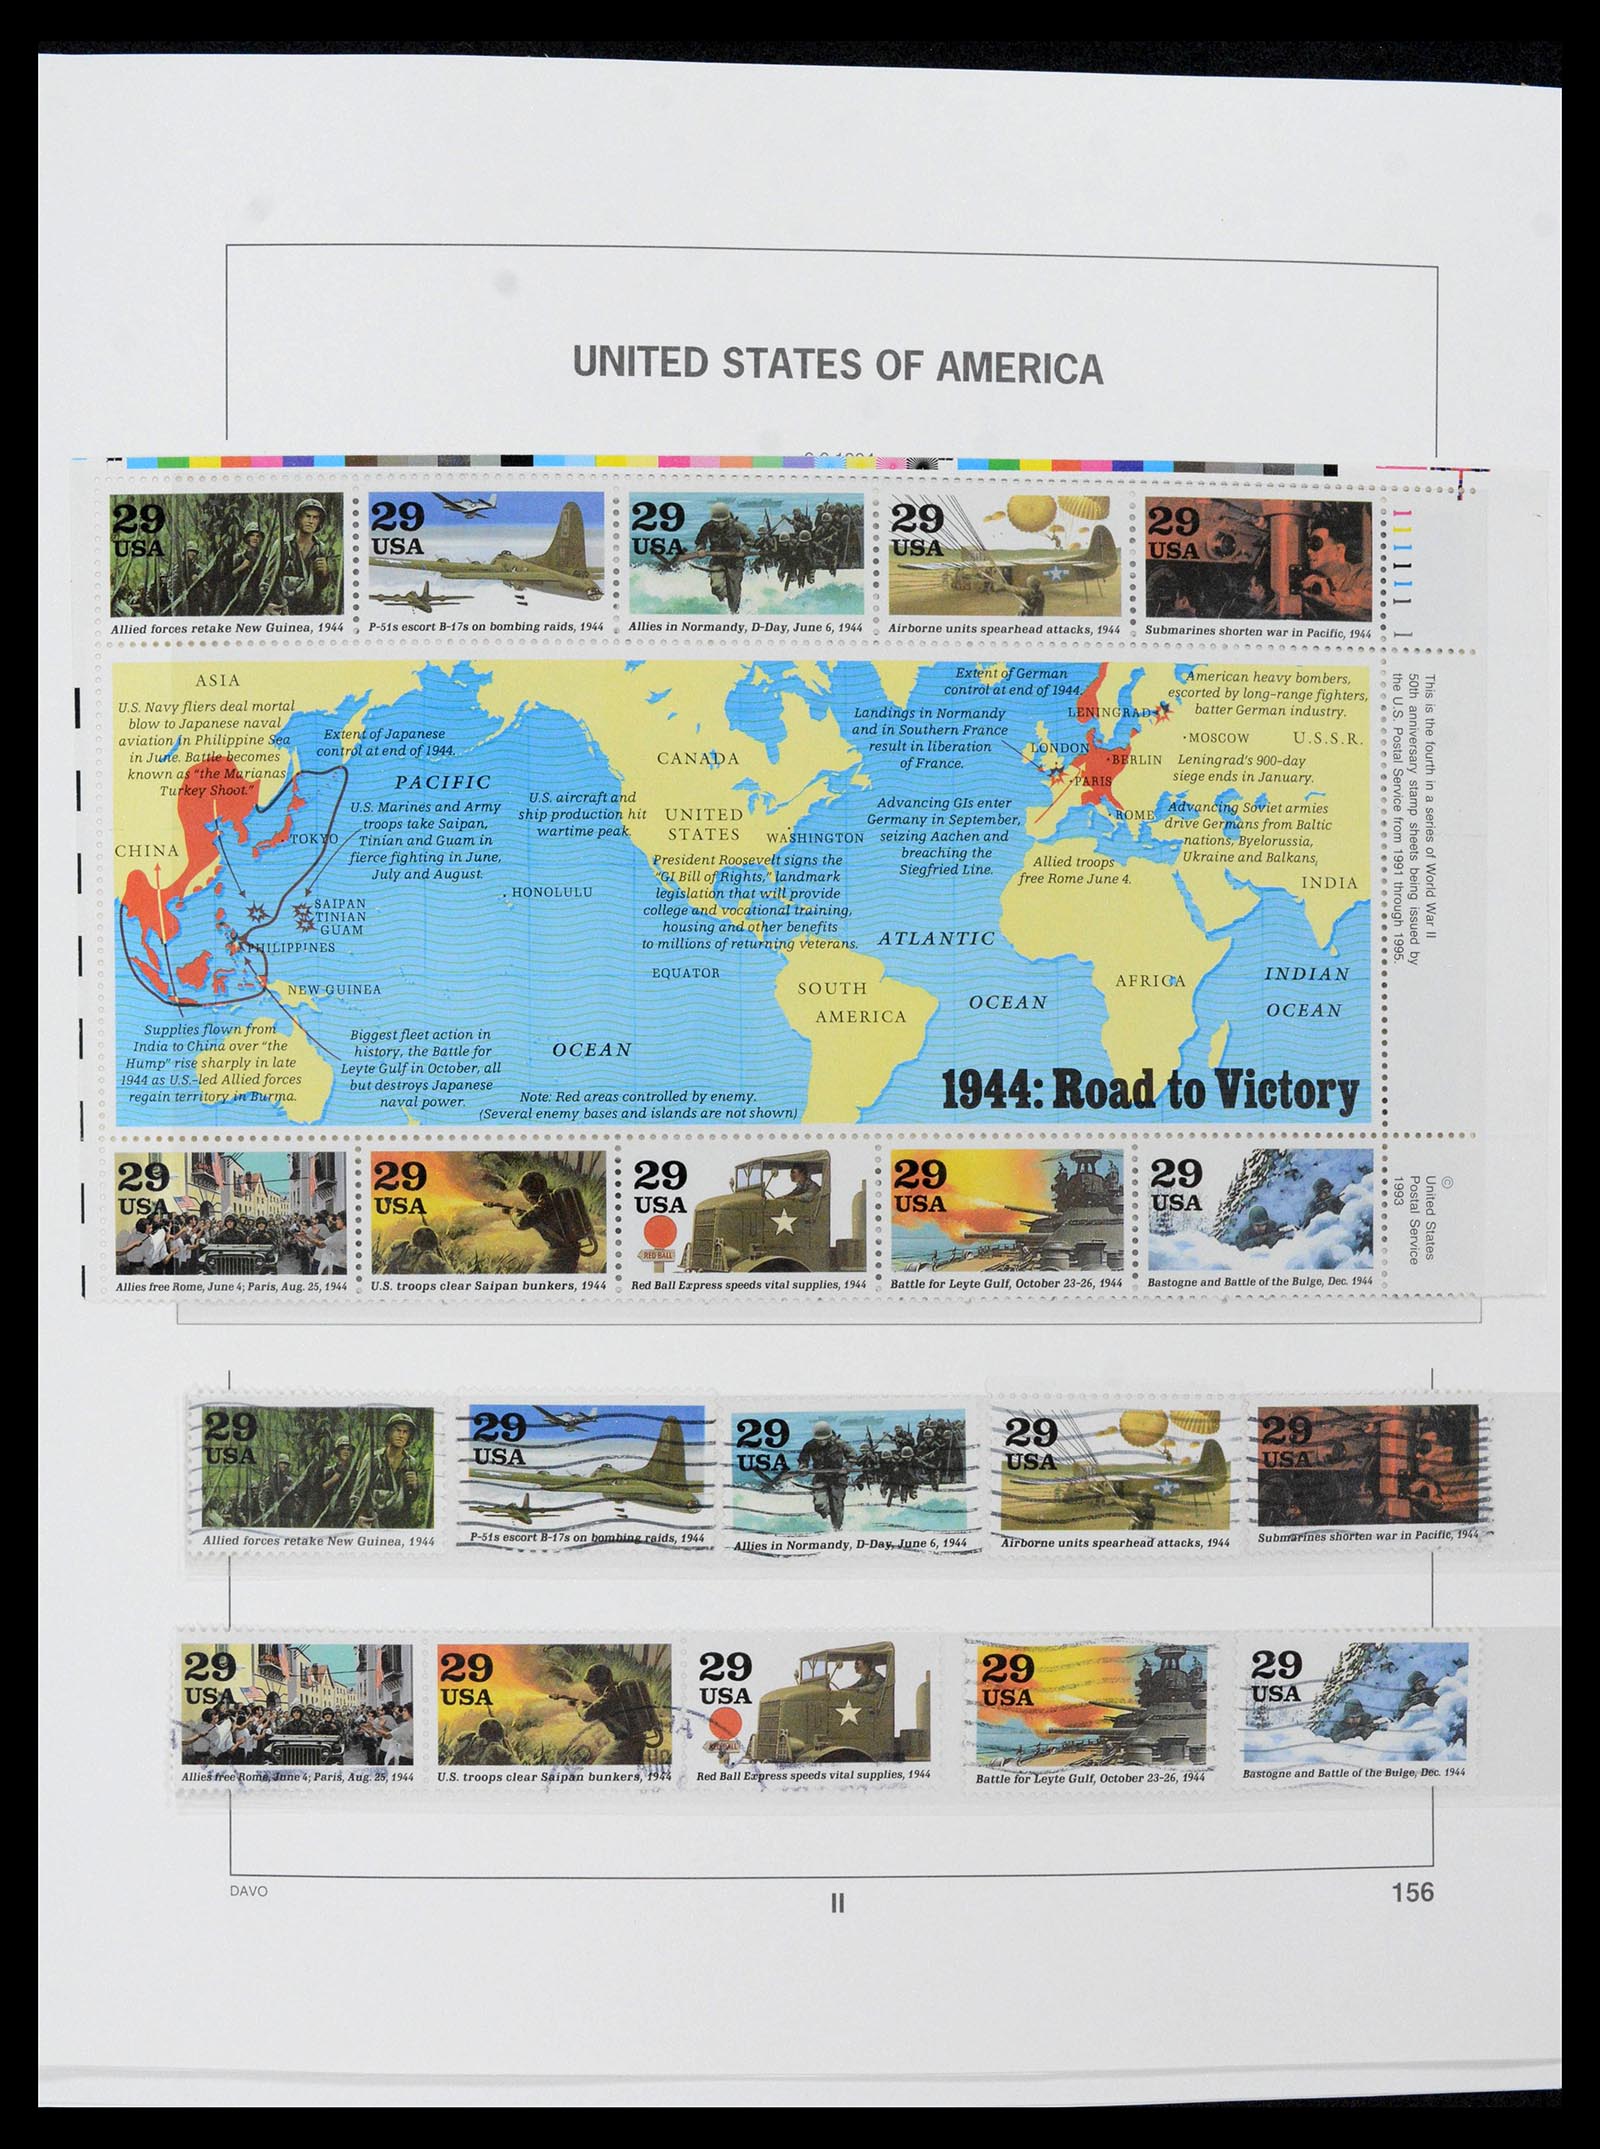 39349 0043 - Stamp collection 39349 USA 1989-2021!